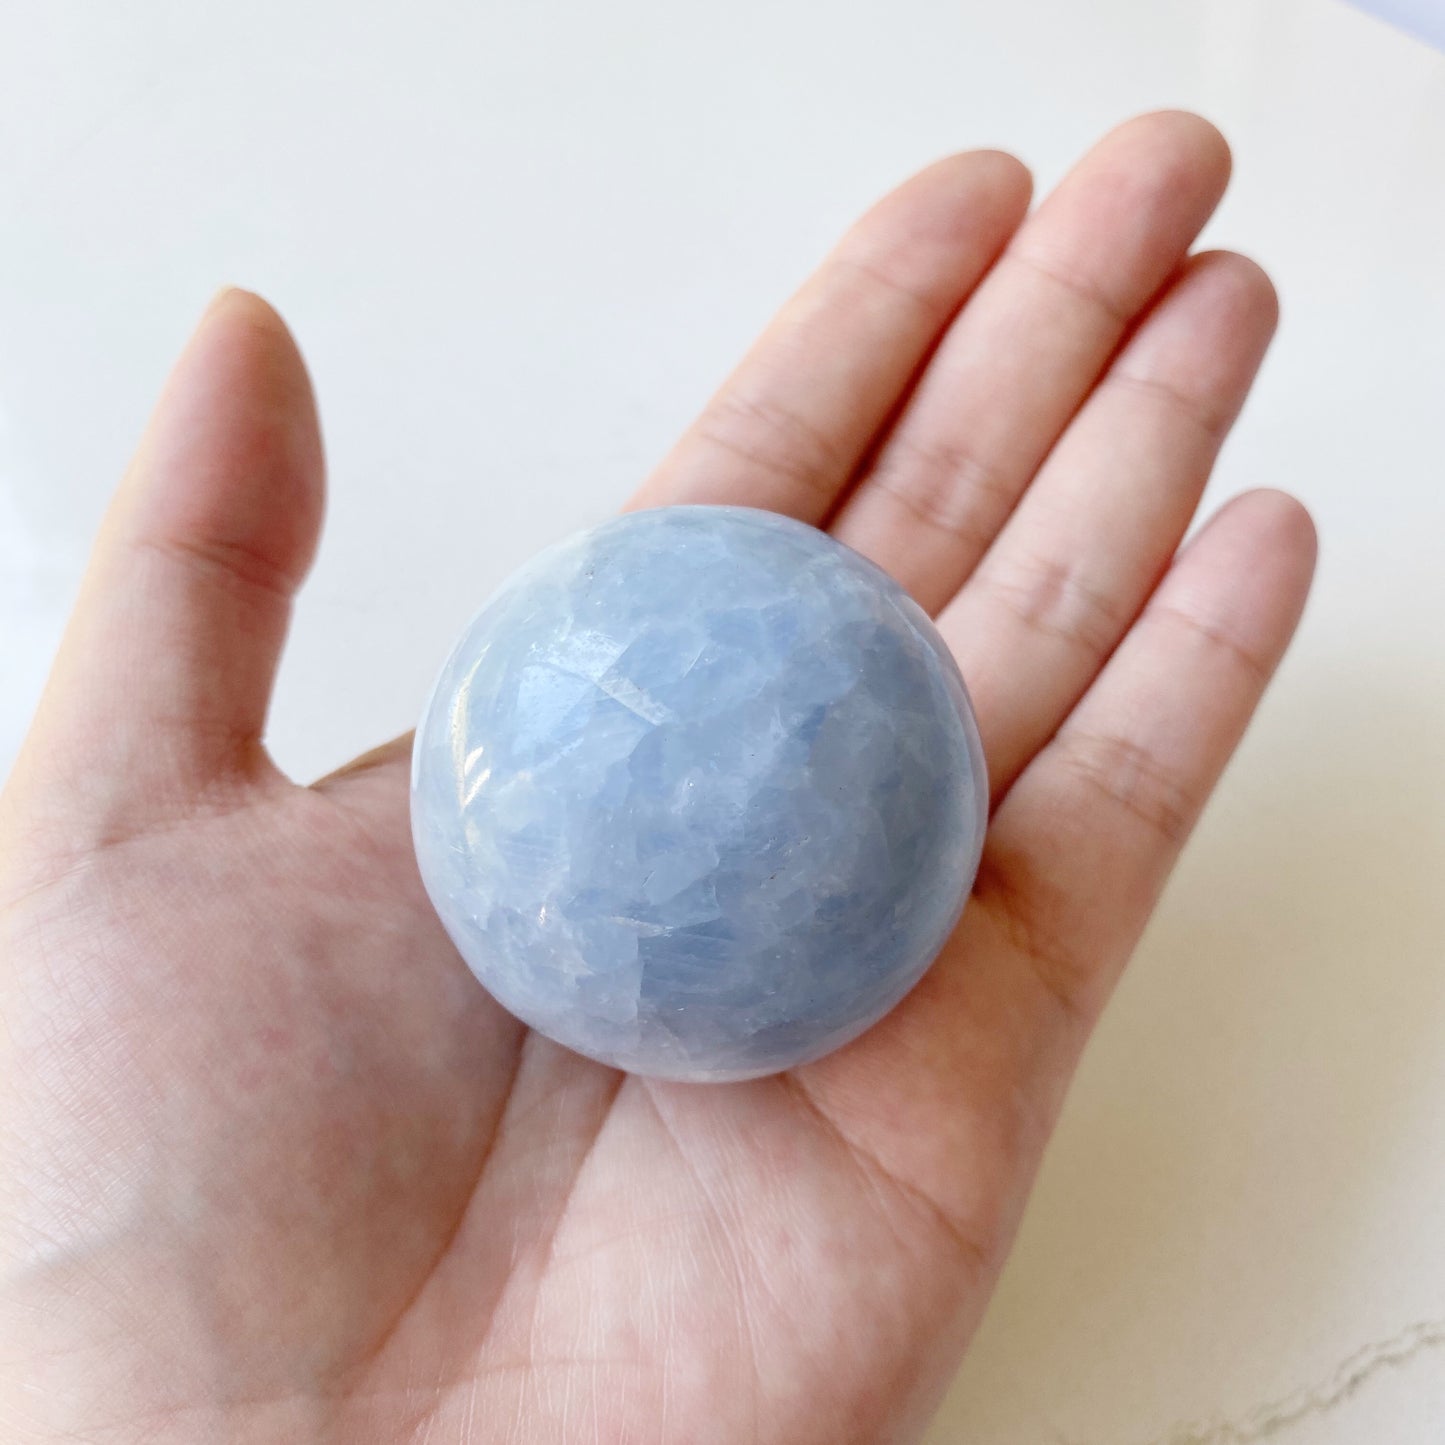 Blue Calcite Sphere